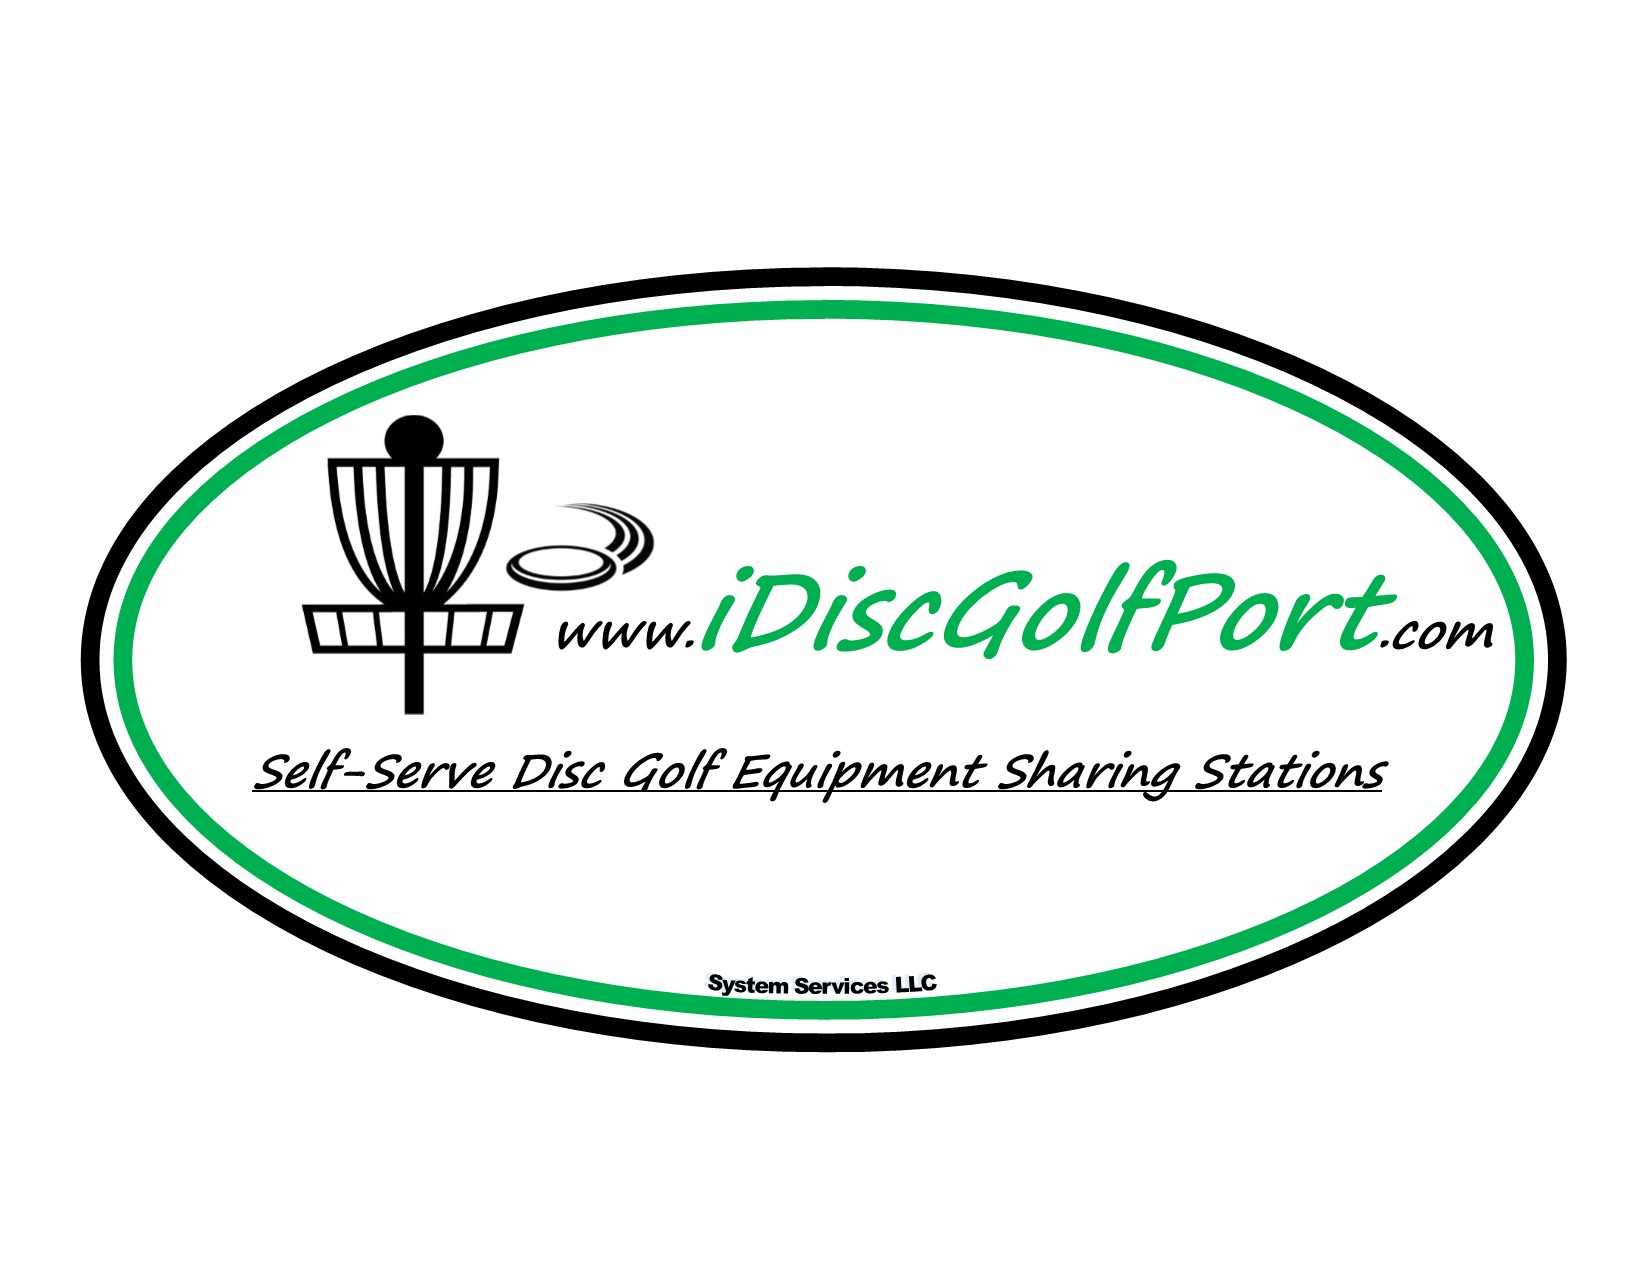 iDiskGolfPort Logo SSLLC.jpg